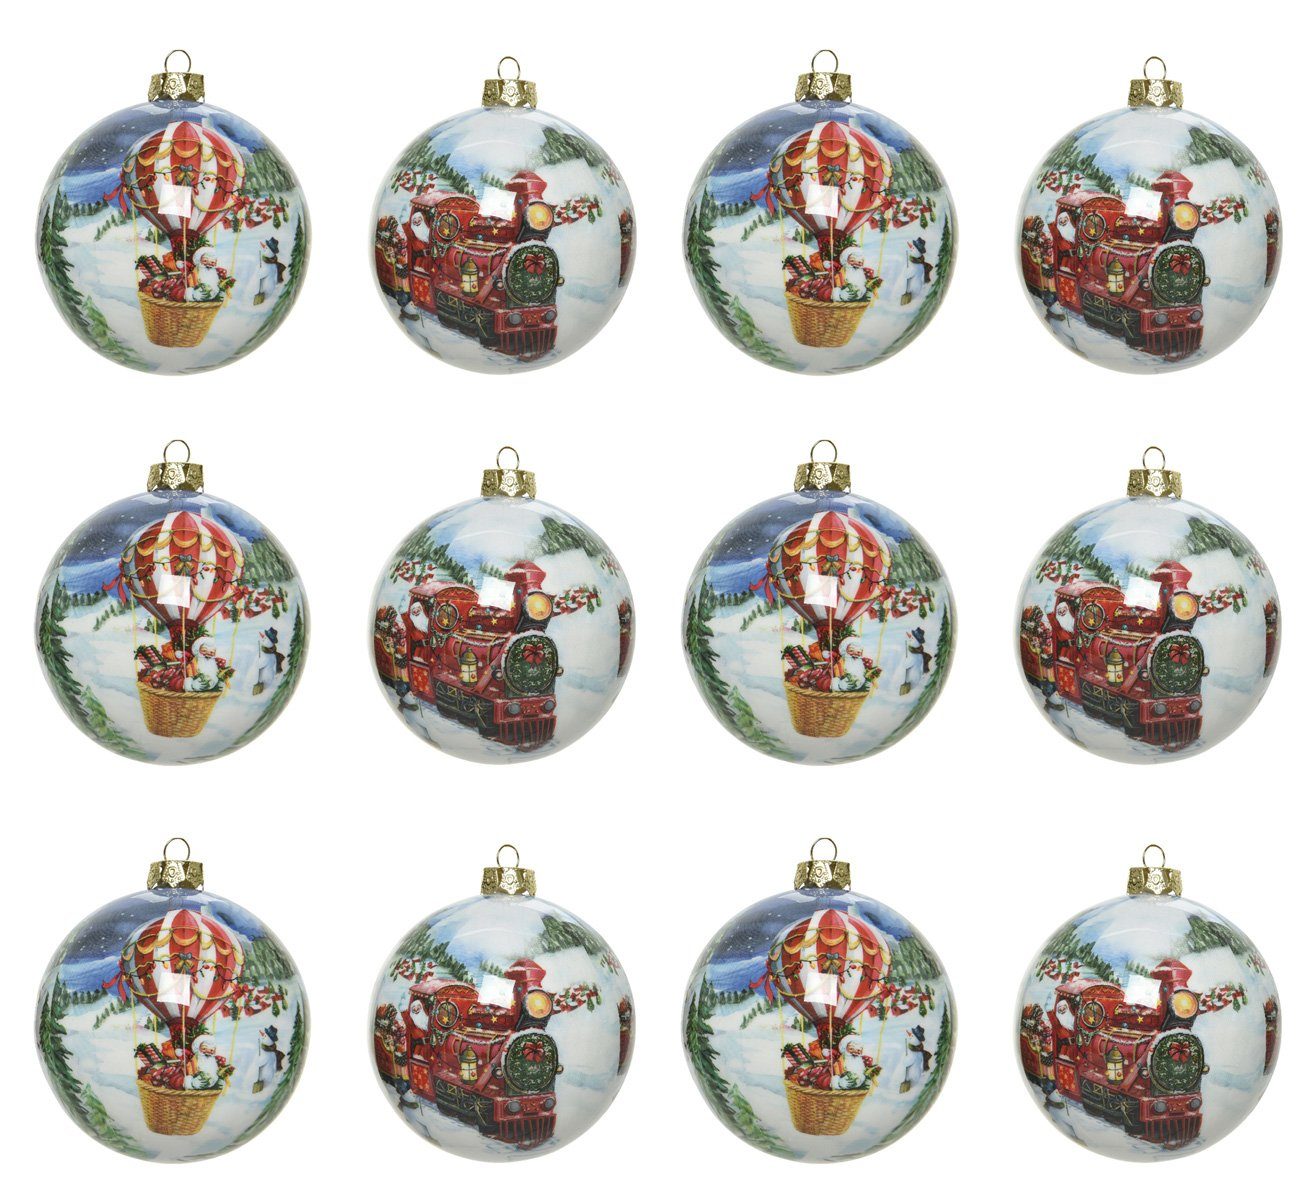 Decoris season decorations Christbaumschmuck, Weihnachtskugeln Kunststoff 8cm Weihnachtliche Motive 12er Set - Bunt